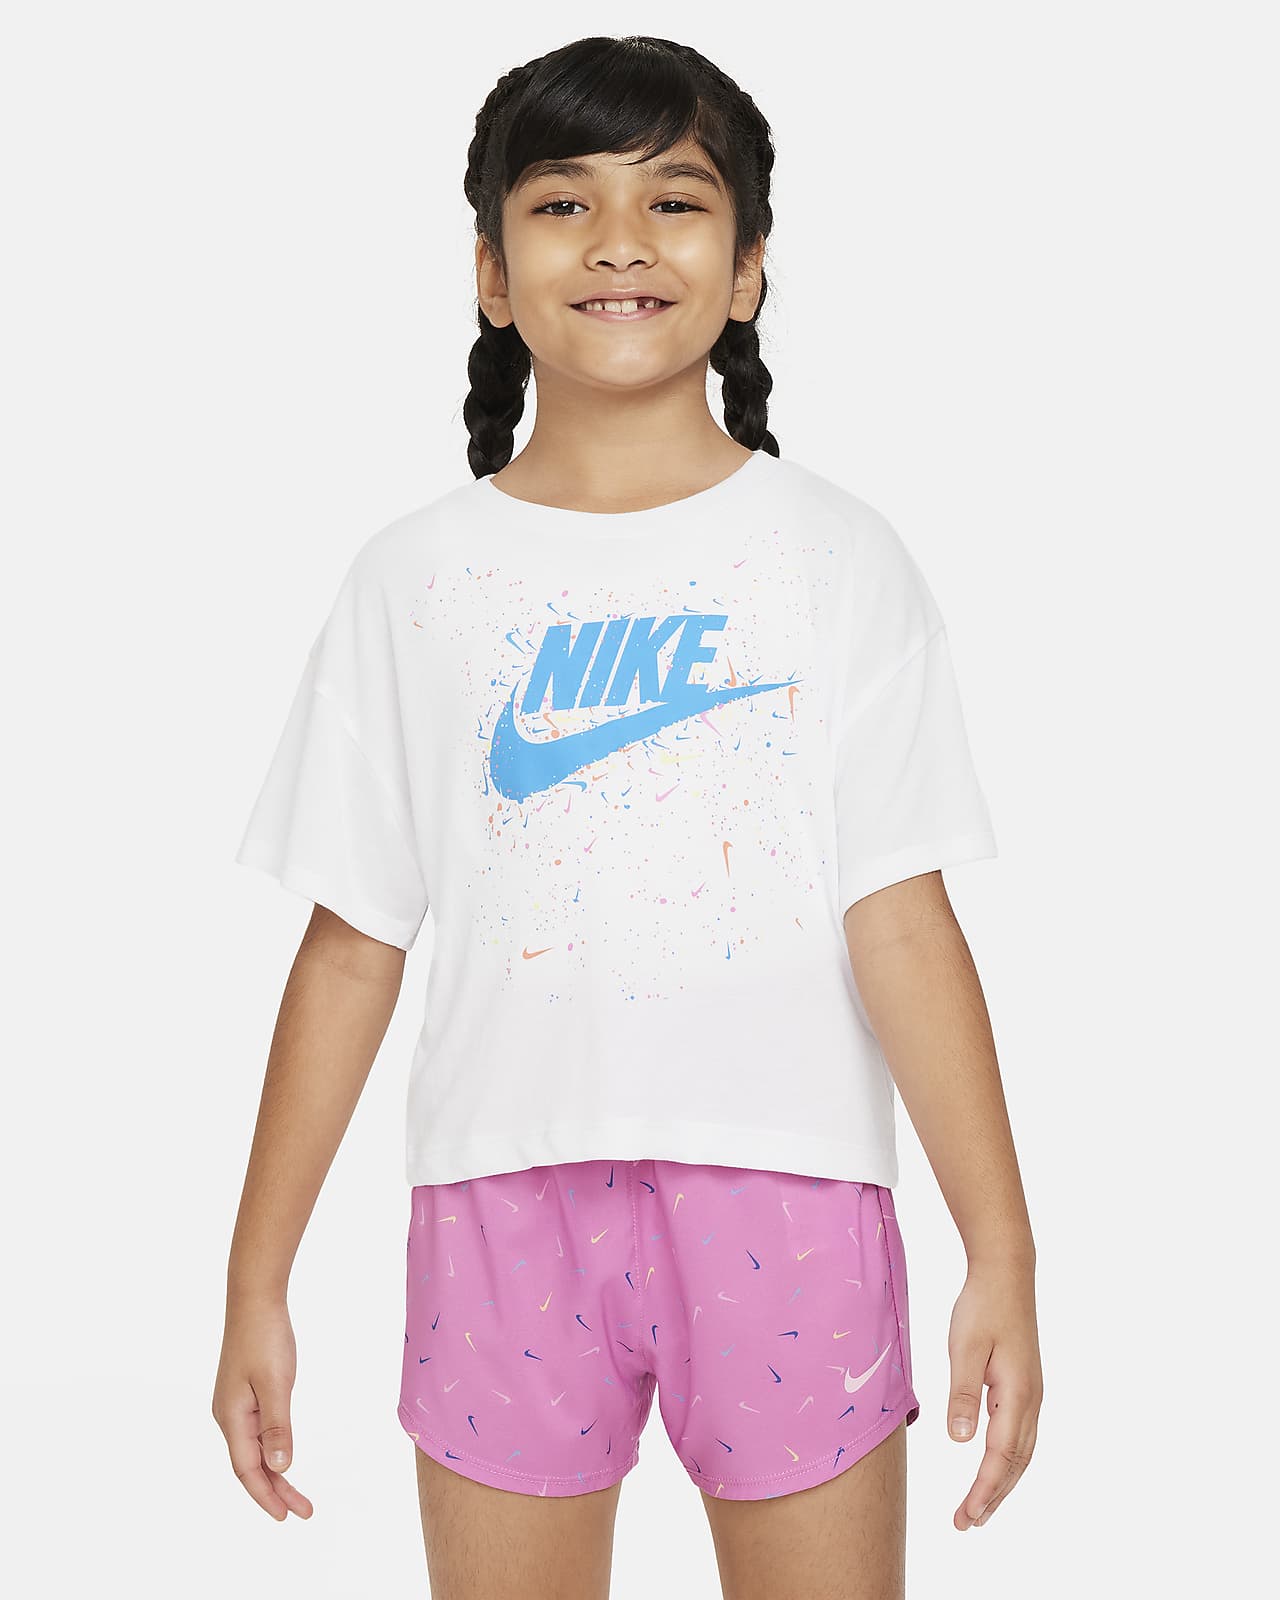 Nike-T-shirt til mindre børn